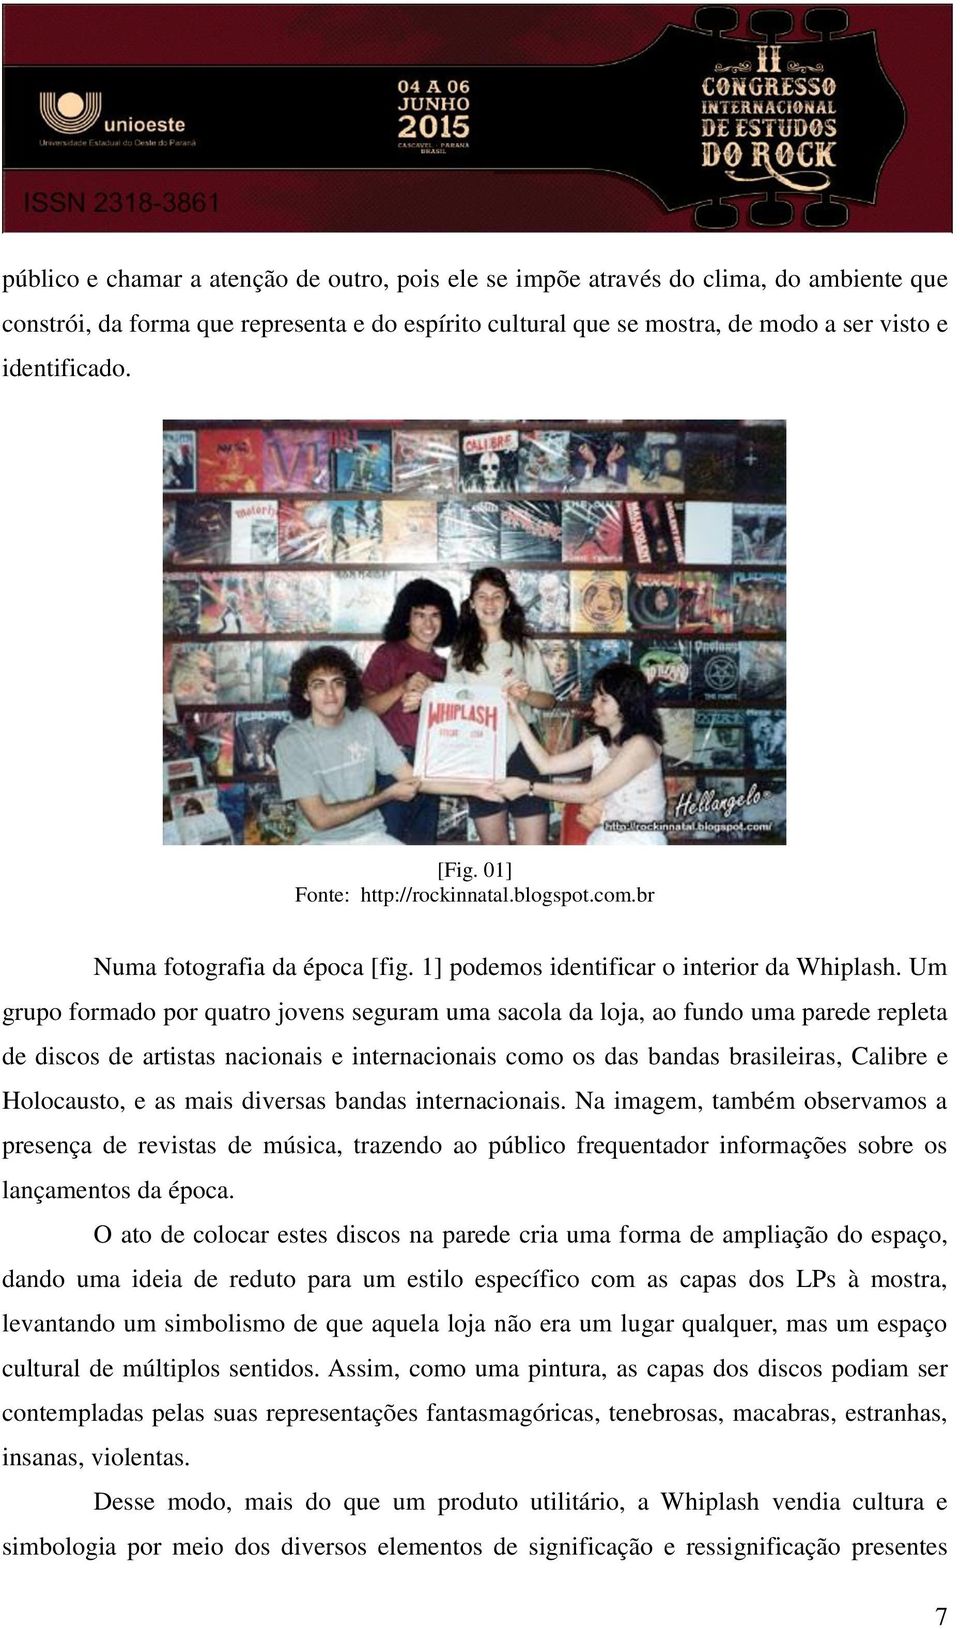 Um grupo formado por quatro jovens seguram uma sacola da loja, ao fundo uma parede repleta de discos de artistas nacionais e internacionais como os das bandas brasileiras, Calibre e Holocausto, e as